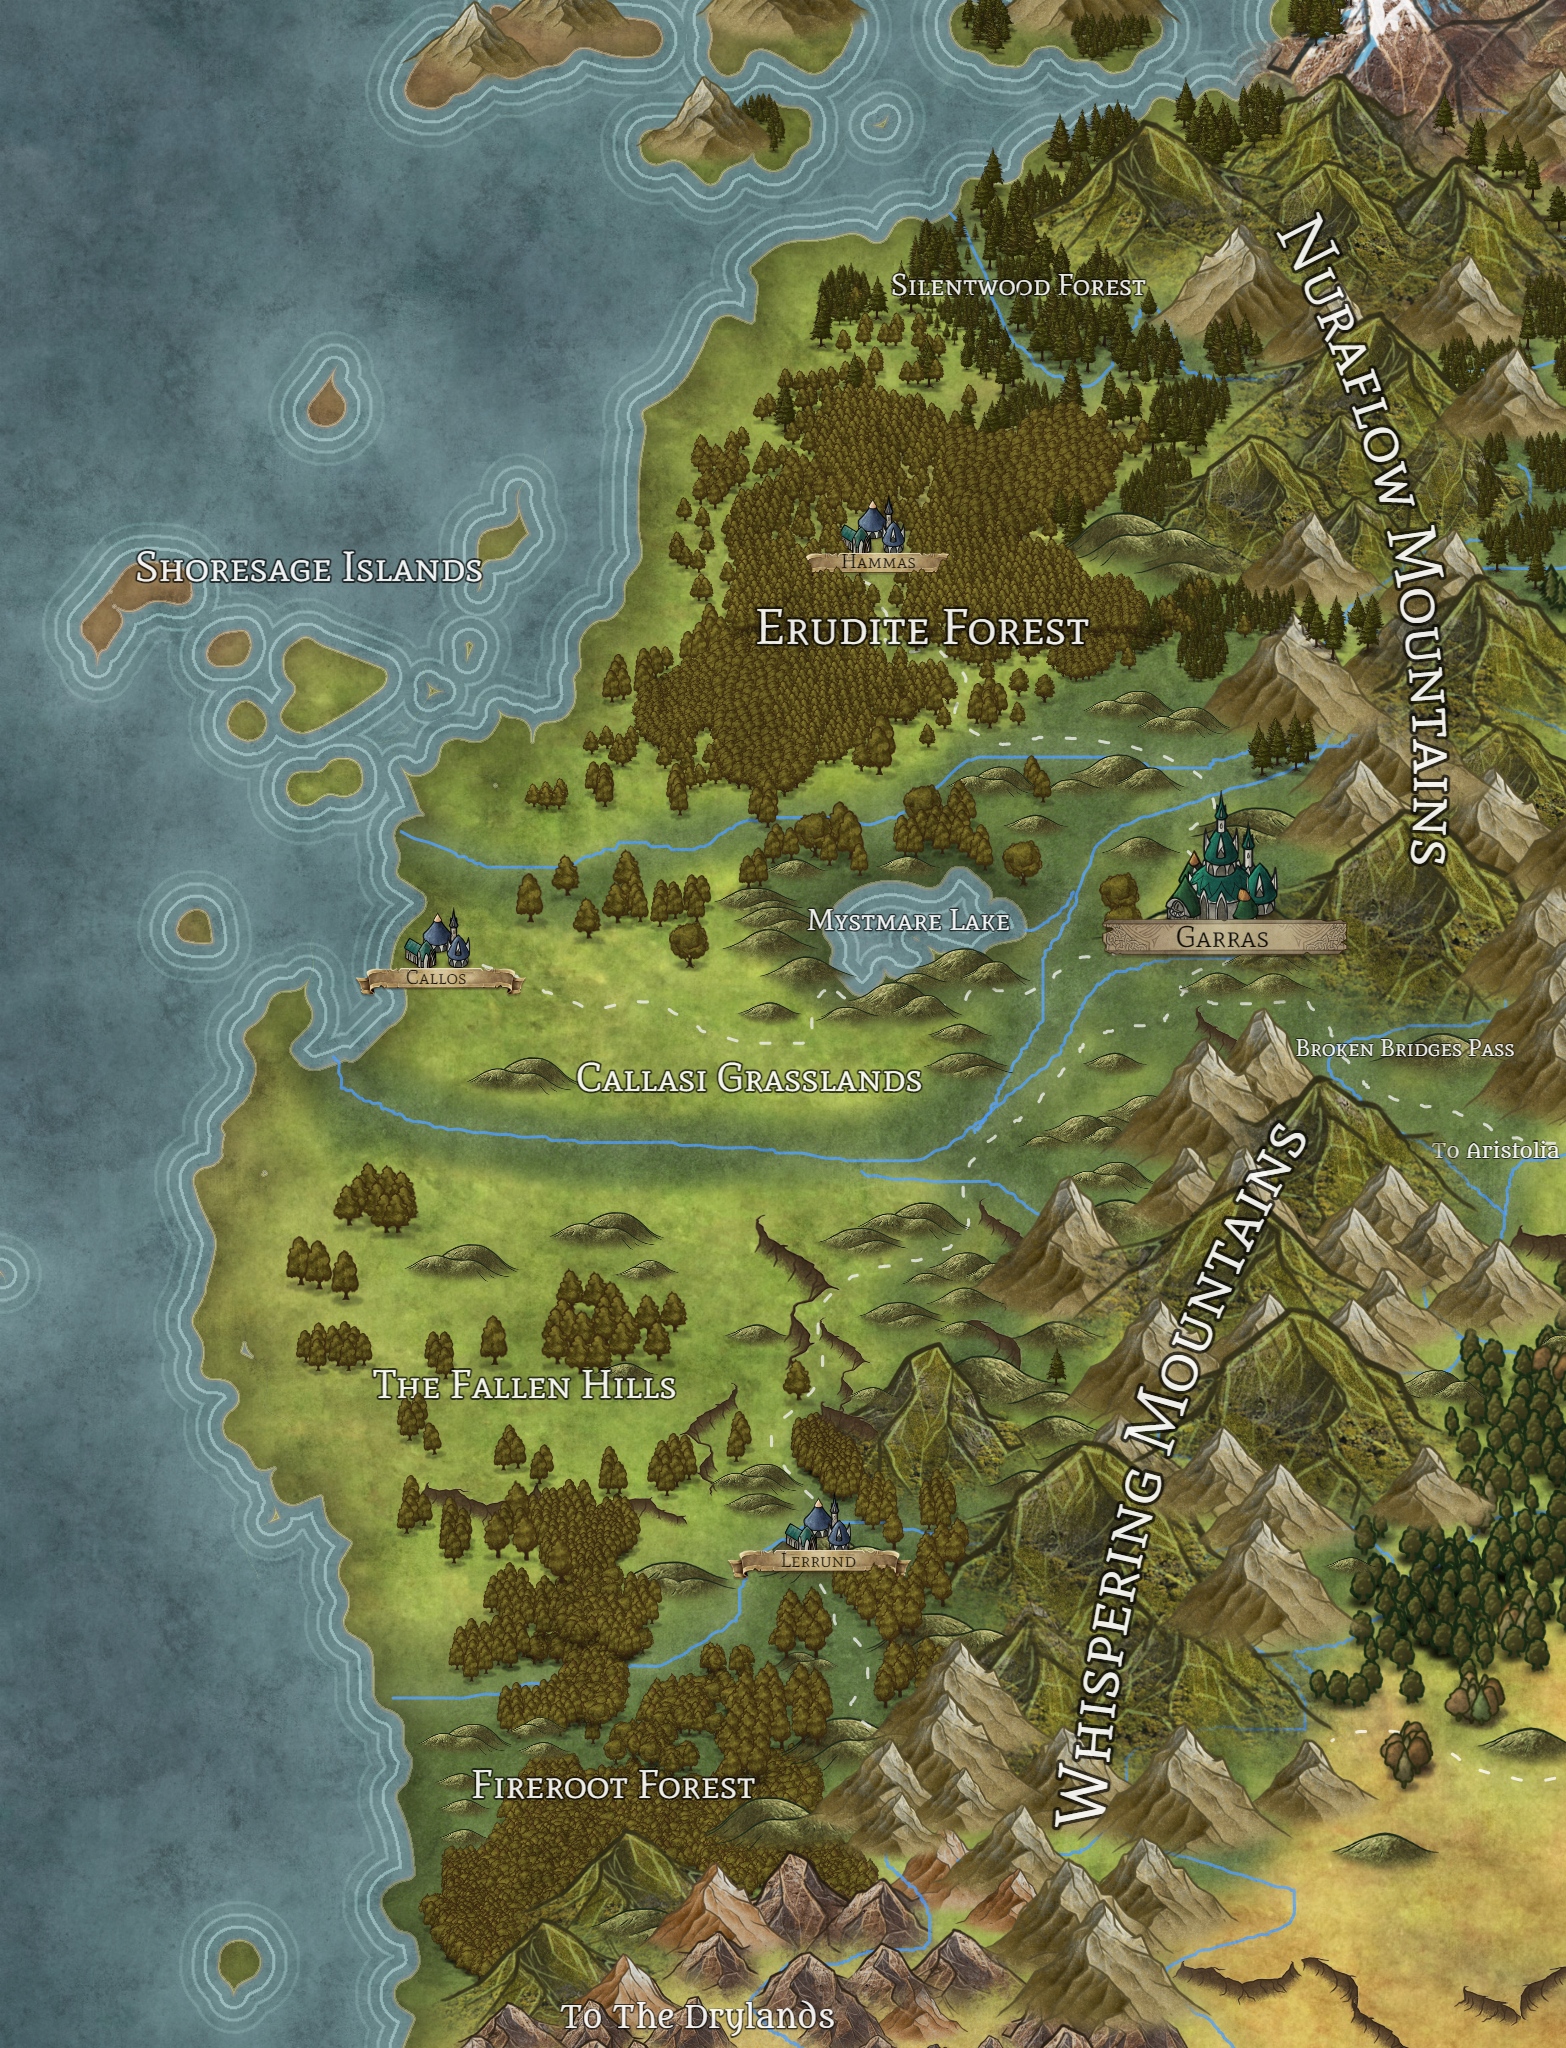 Lithos Base Map Image